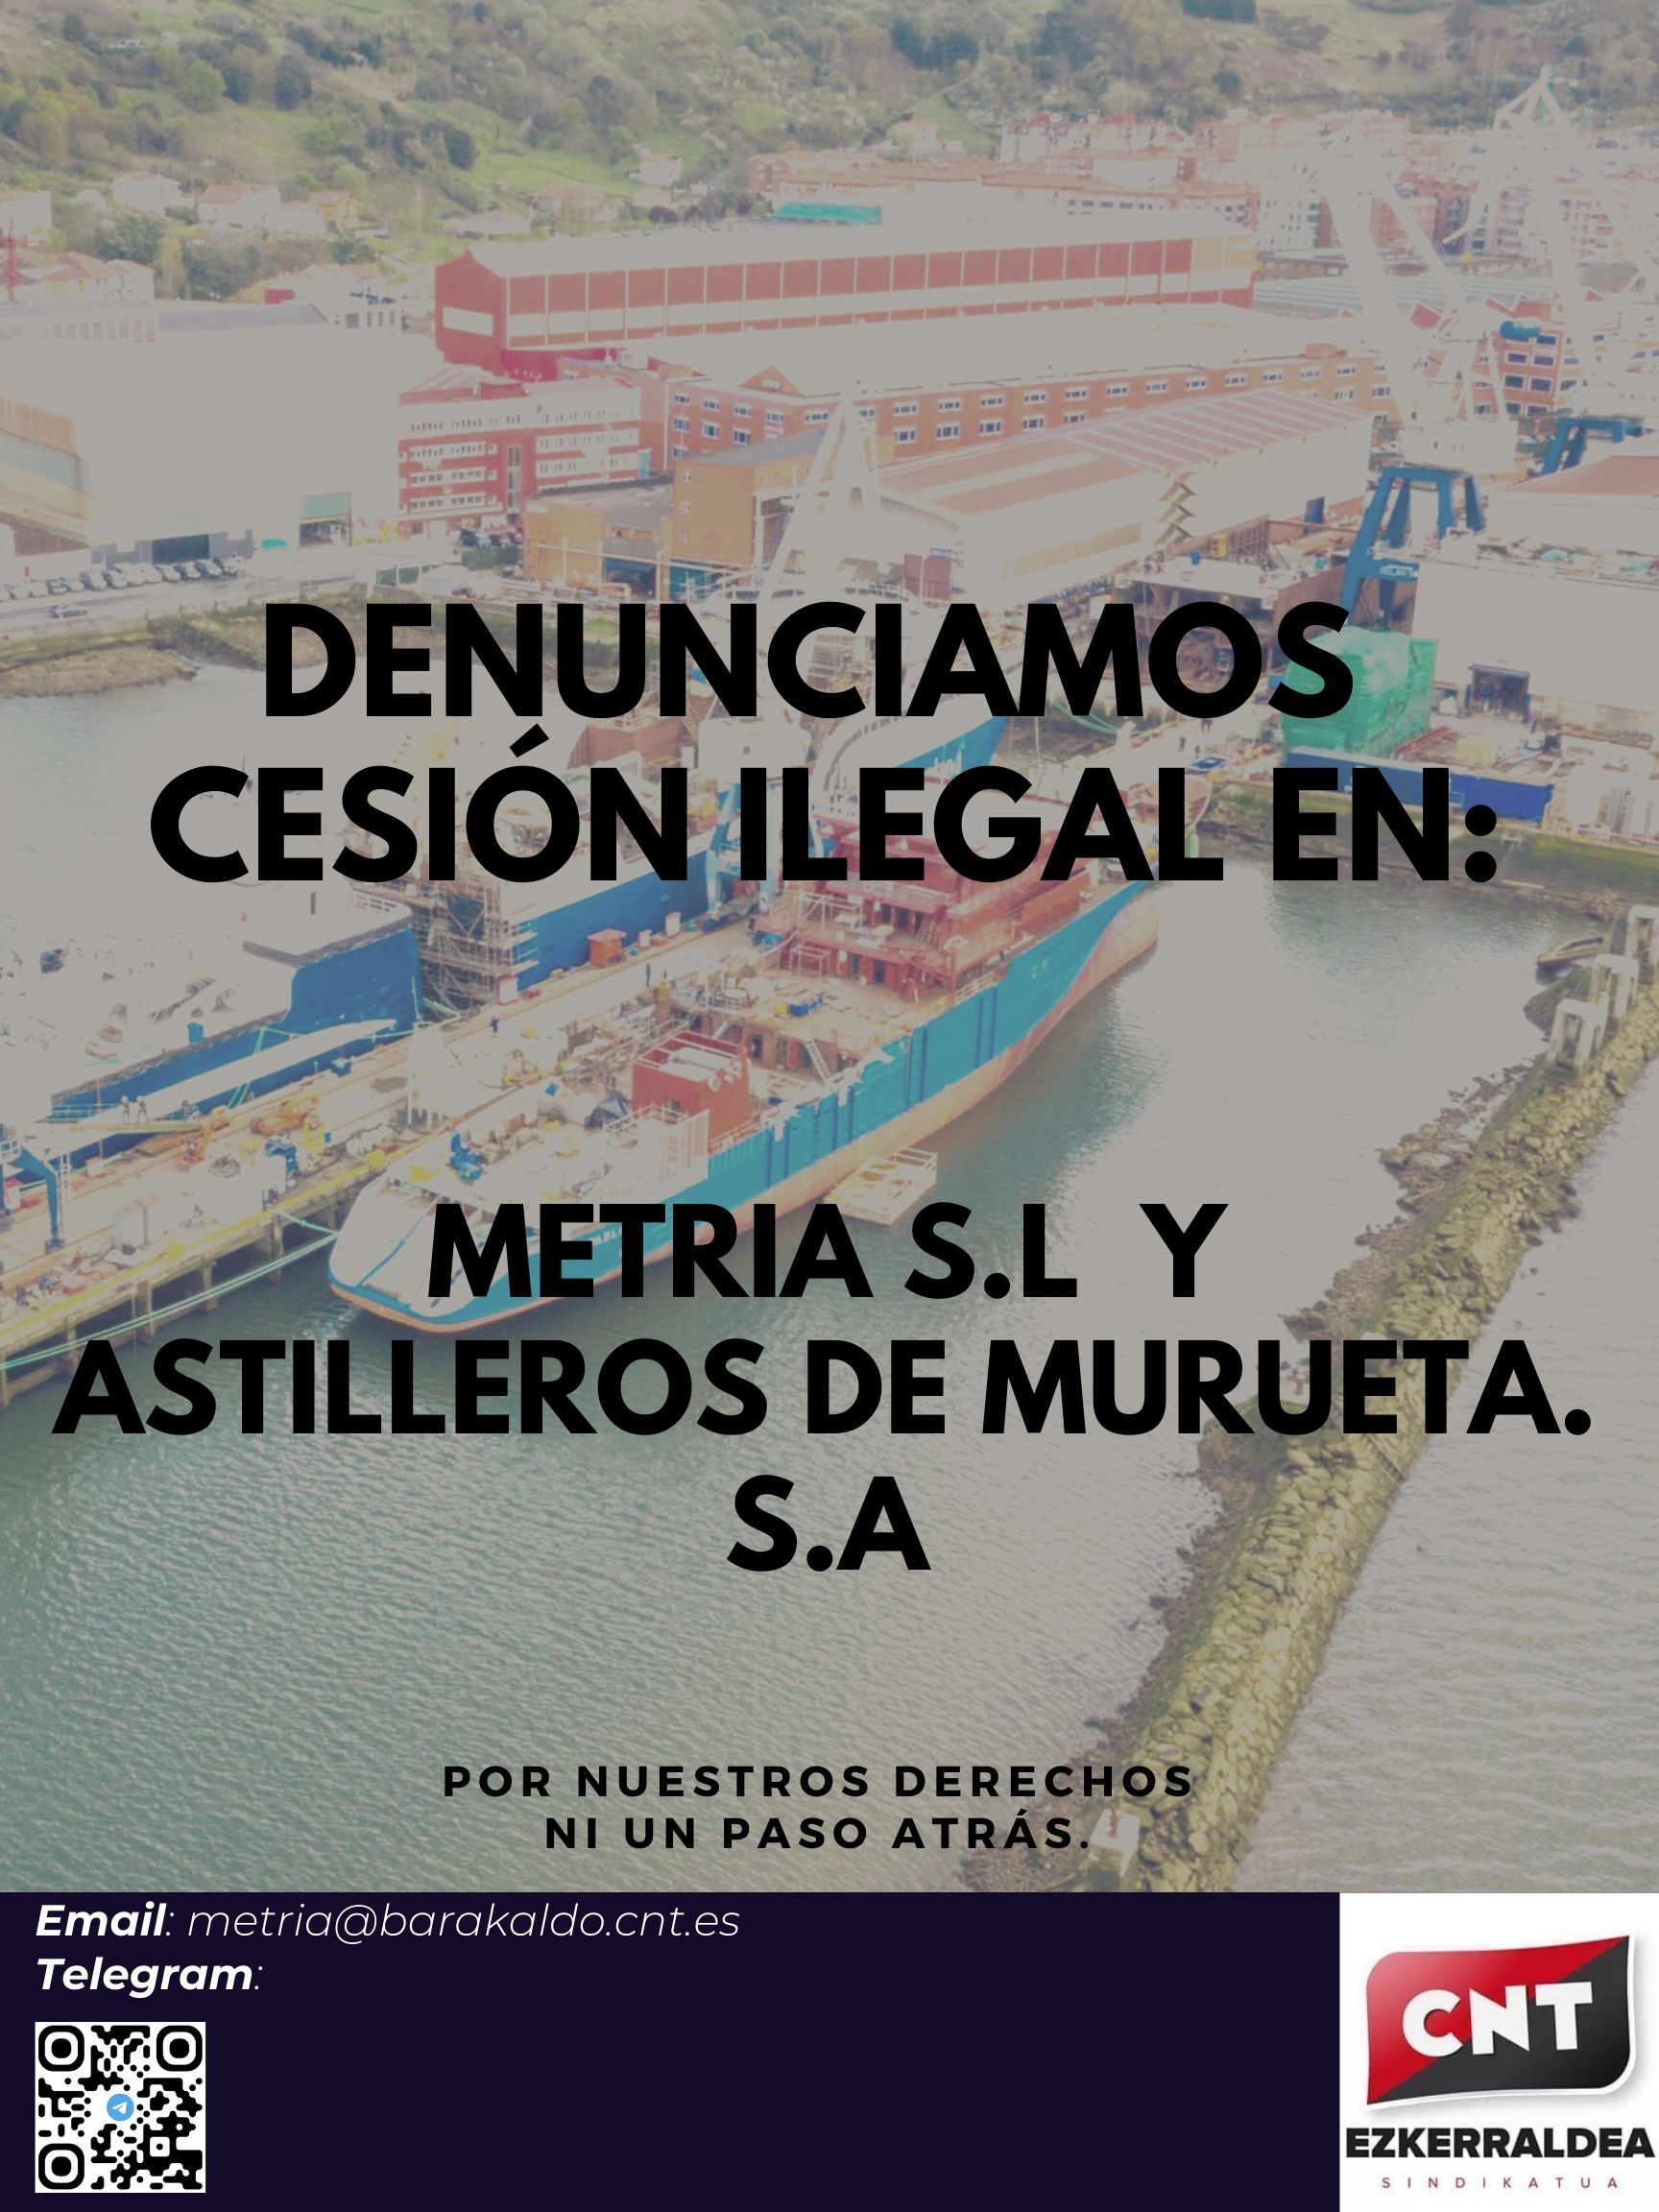 La Sección Sindical de CNT demanda a Metalúrgica La Ría y Astilleros Murueta por cesión ilegal de trabajadores